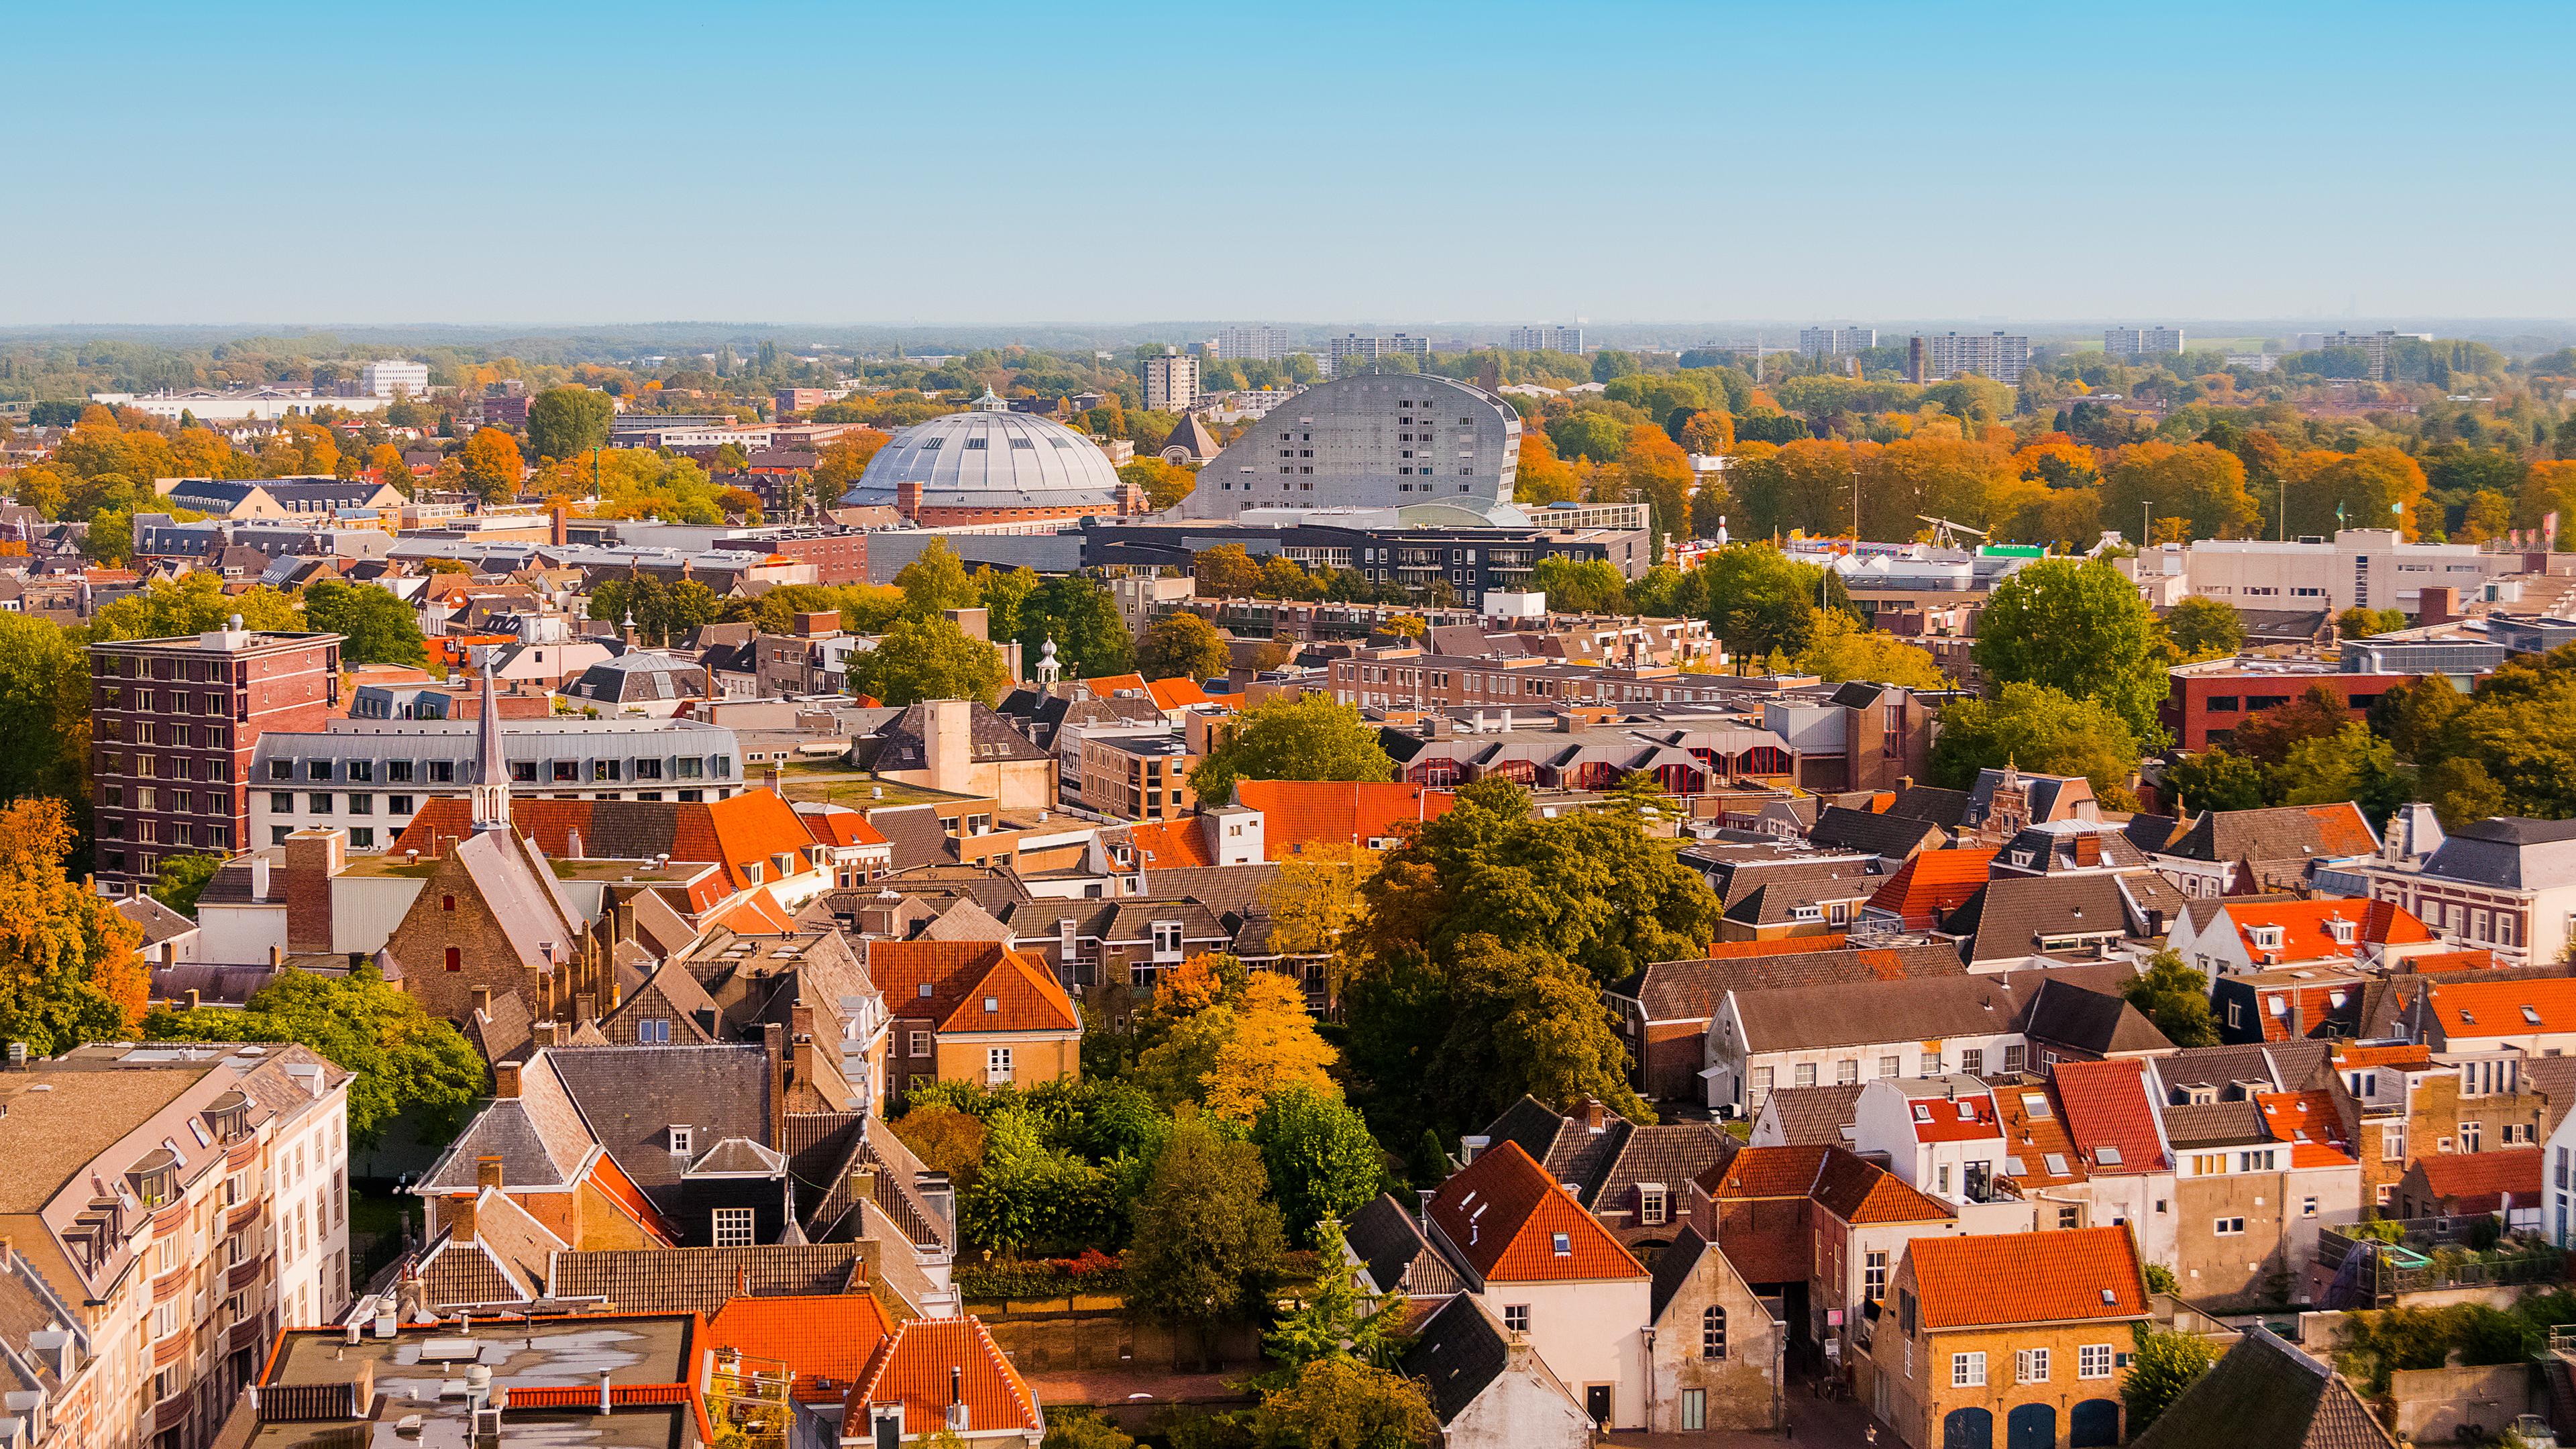 The Breda city, cover photo